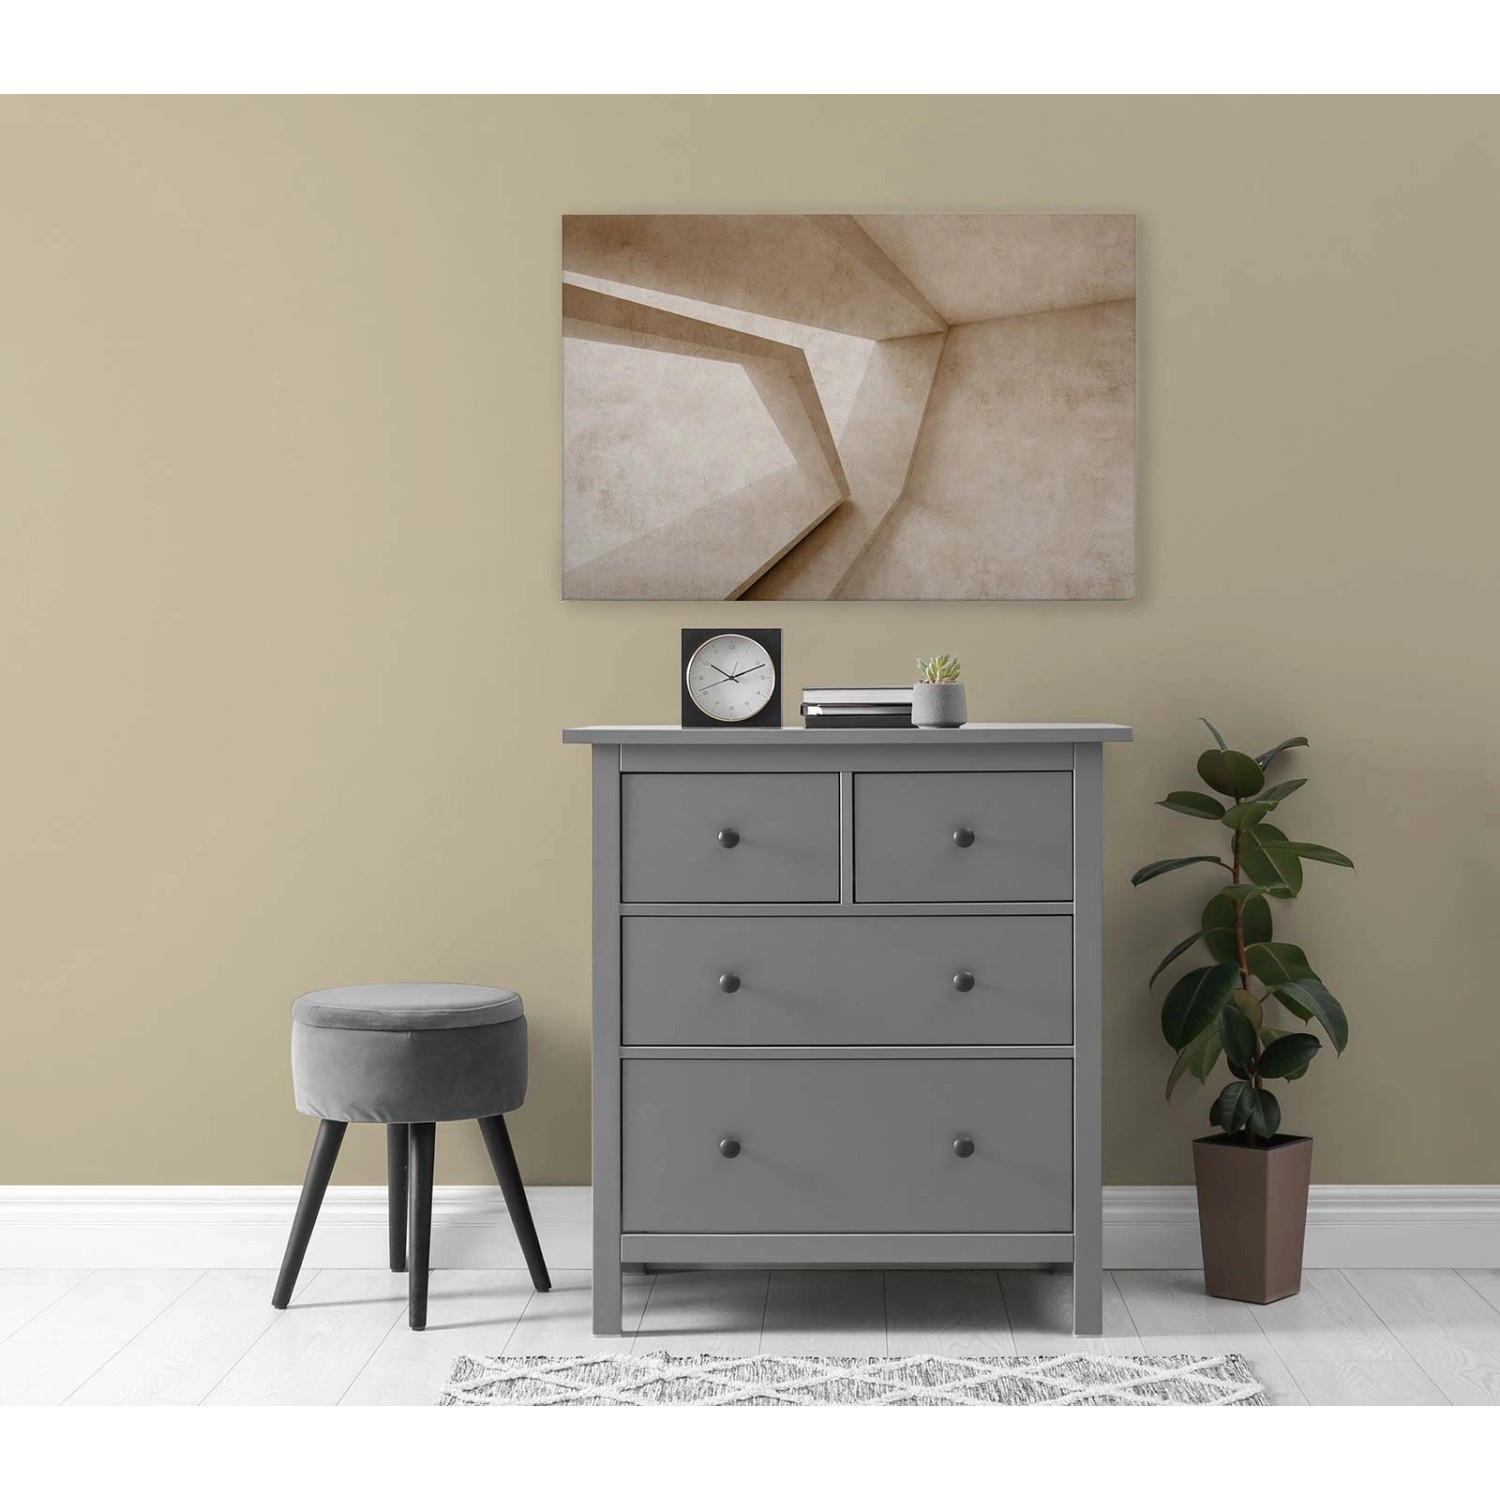 Bricoflor Bild 3D In Beige Industrial Wandbild Geometrisch Ideal Für Schlafzimmer Und Büro Leinwandbild 90 X 60 Cm In Be